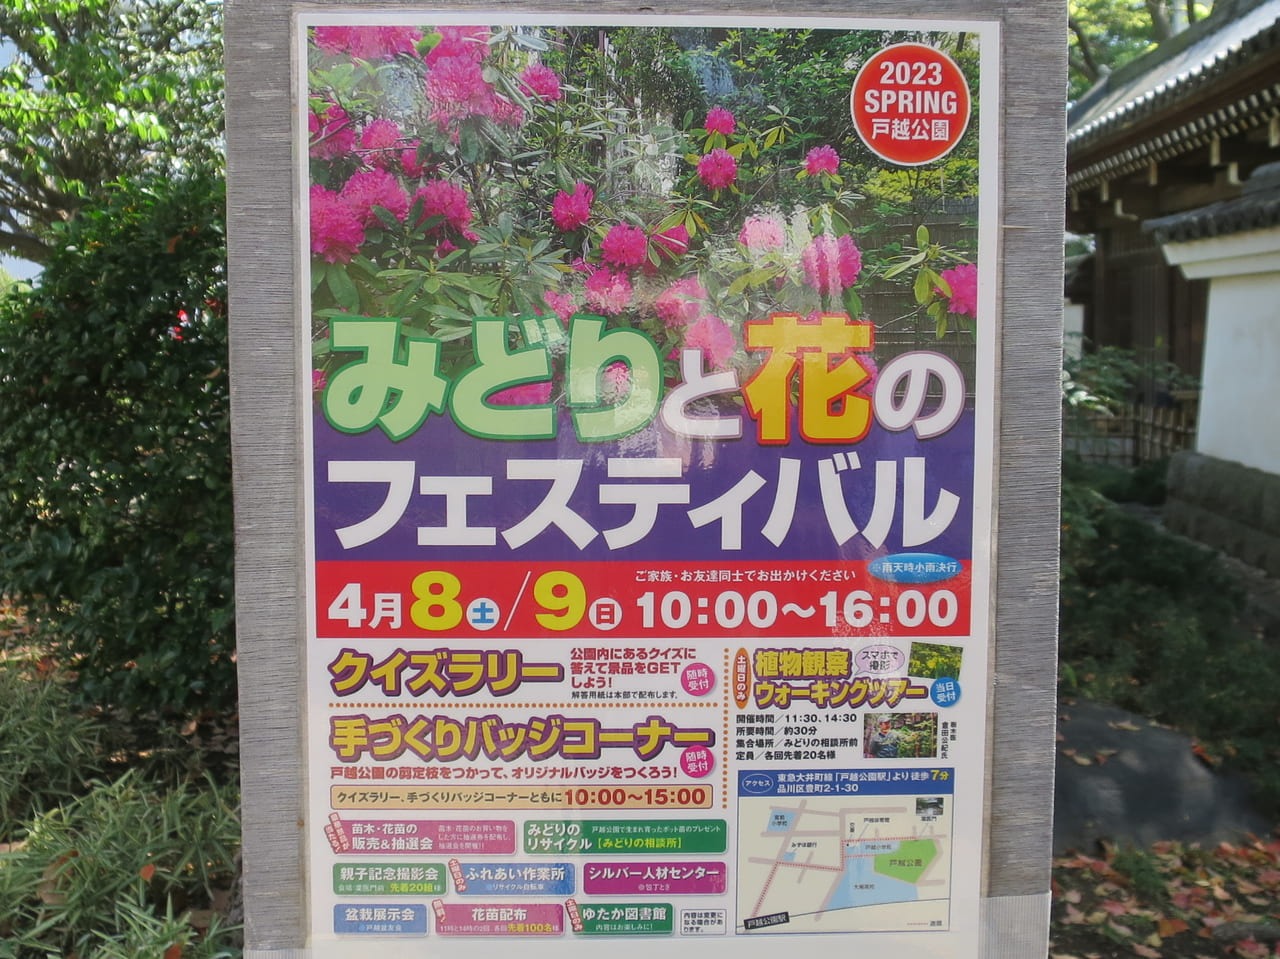 みどりと花のフェスティバル2023年春戸越公園